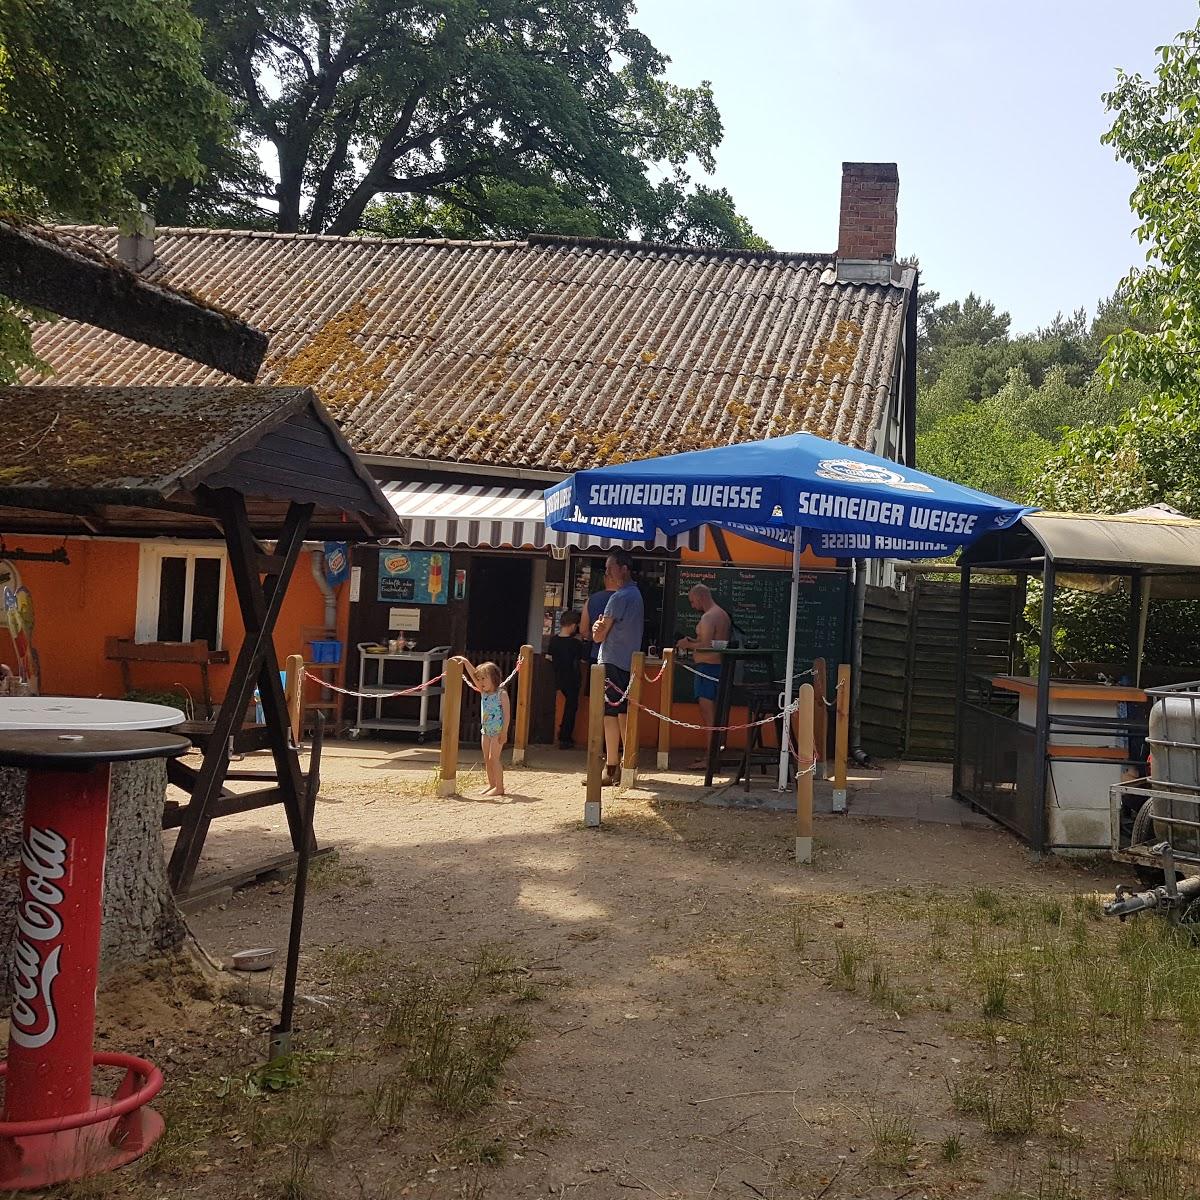 Restaurant "Gartenlokal Insulaner Klause" in Wandlitz